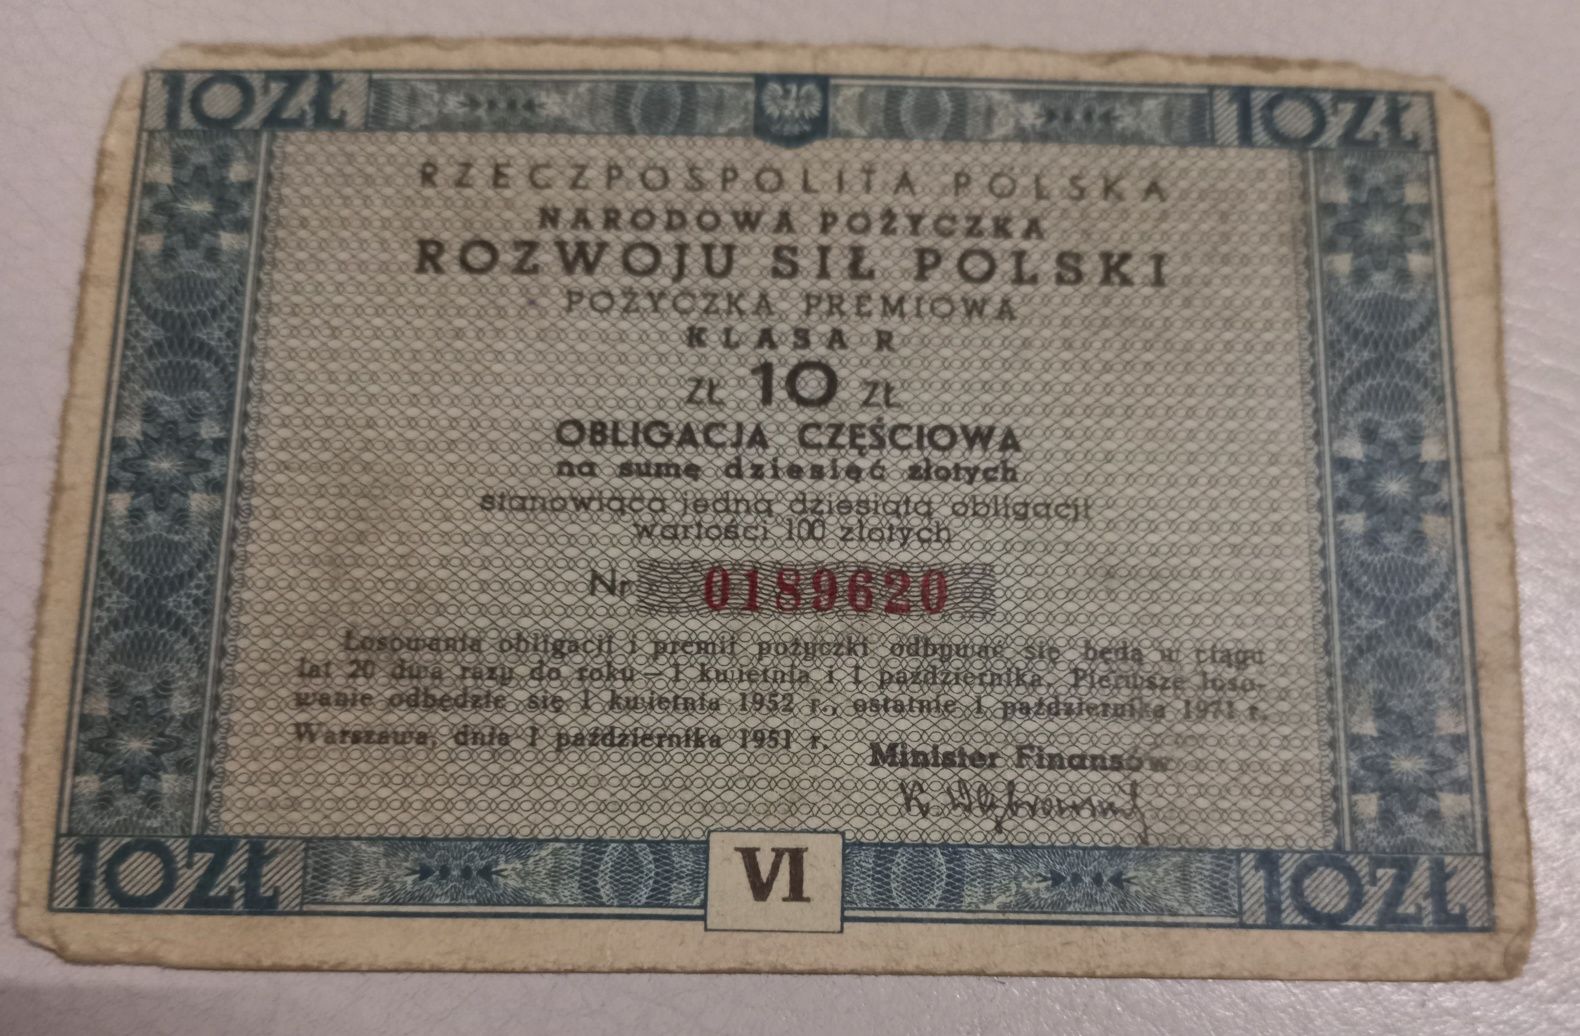 10 zł obligacja częściowa 1951 r.